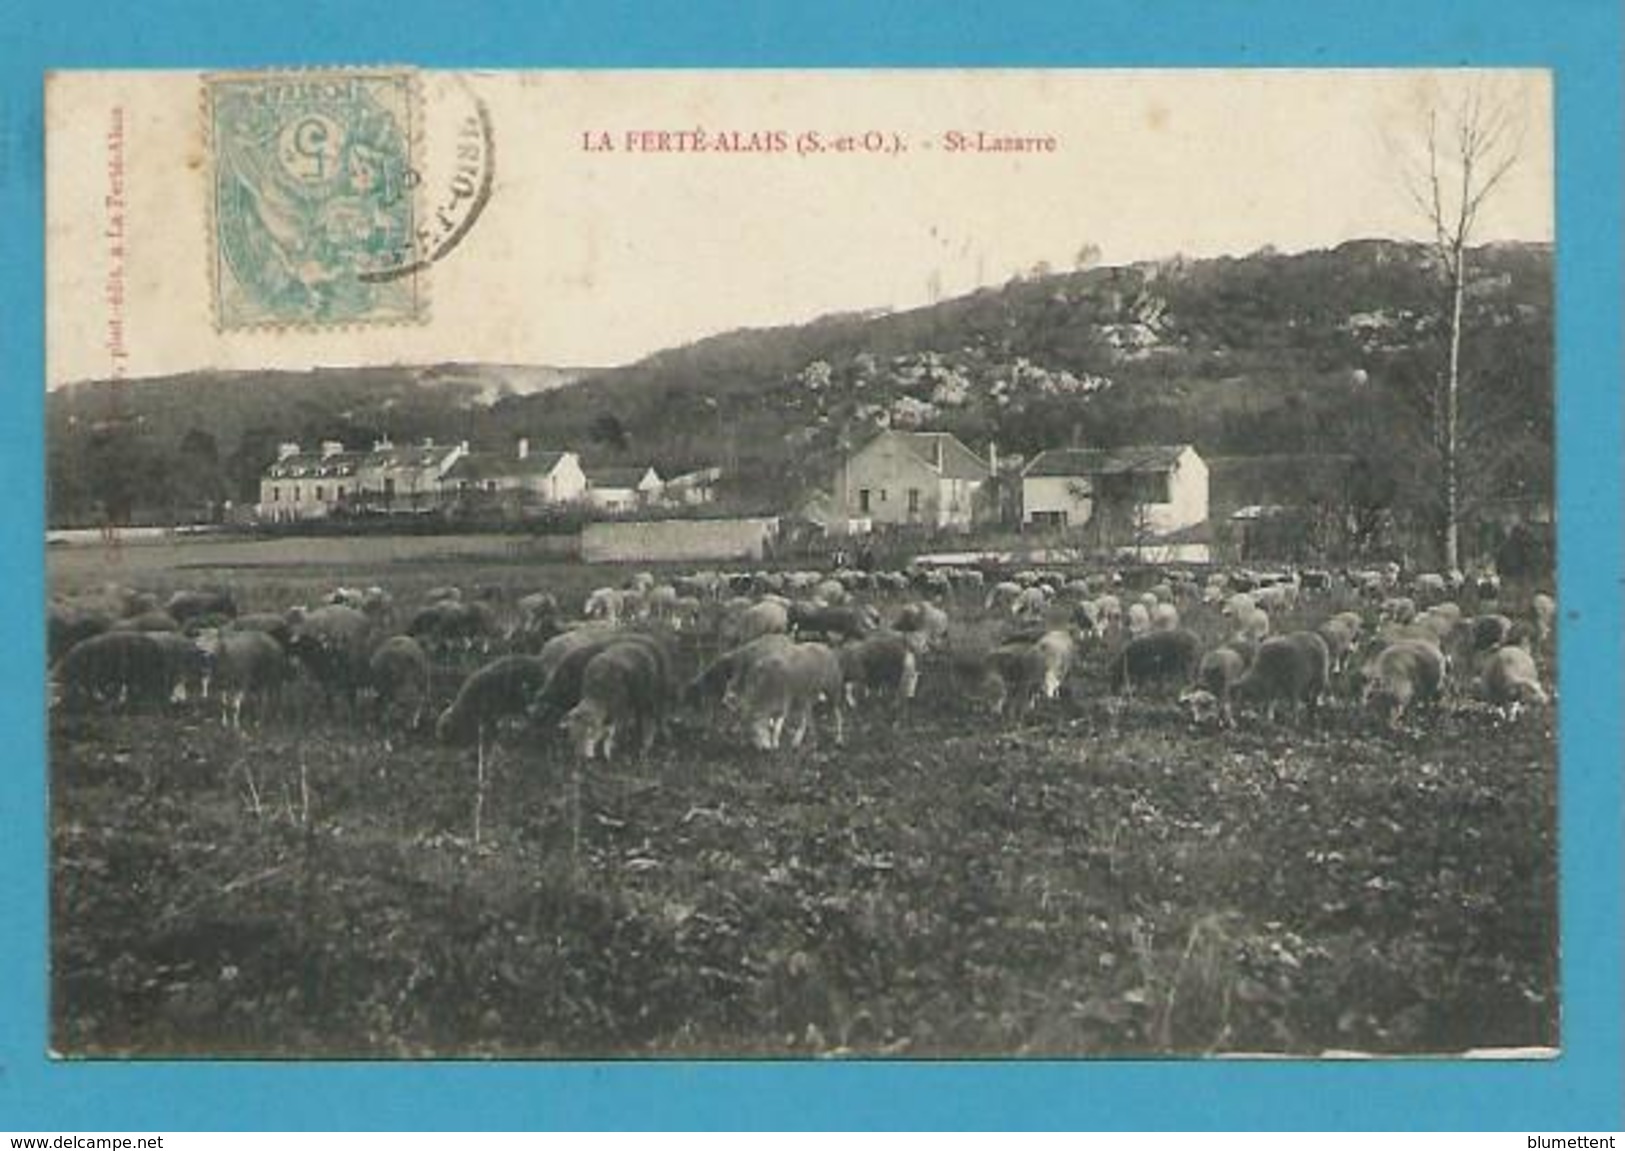 CPA Moutons Au Paturage - St-Lazarre LA FERTE-ALAIS 91 - La Ferte Alais